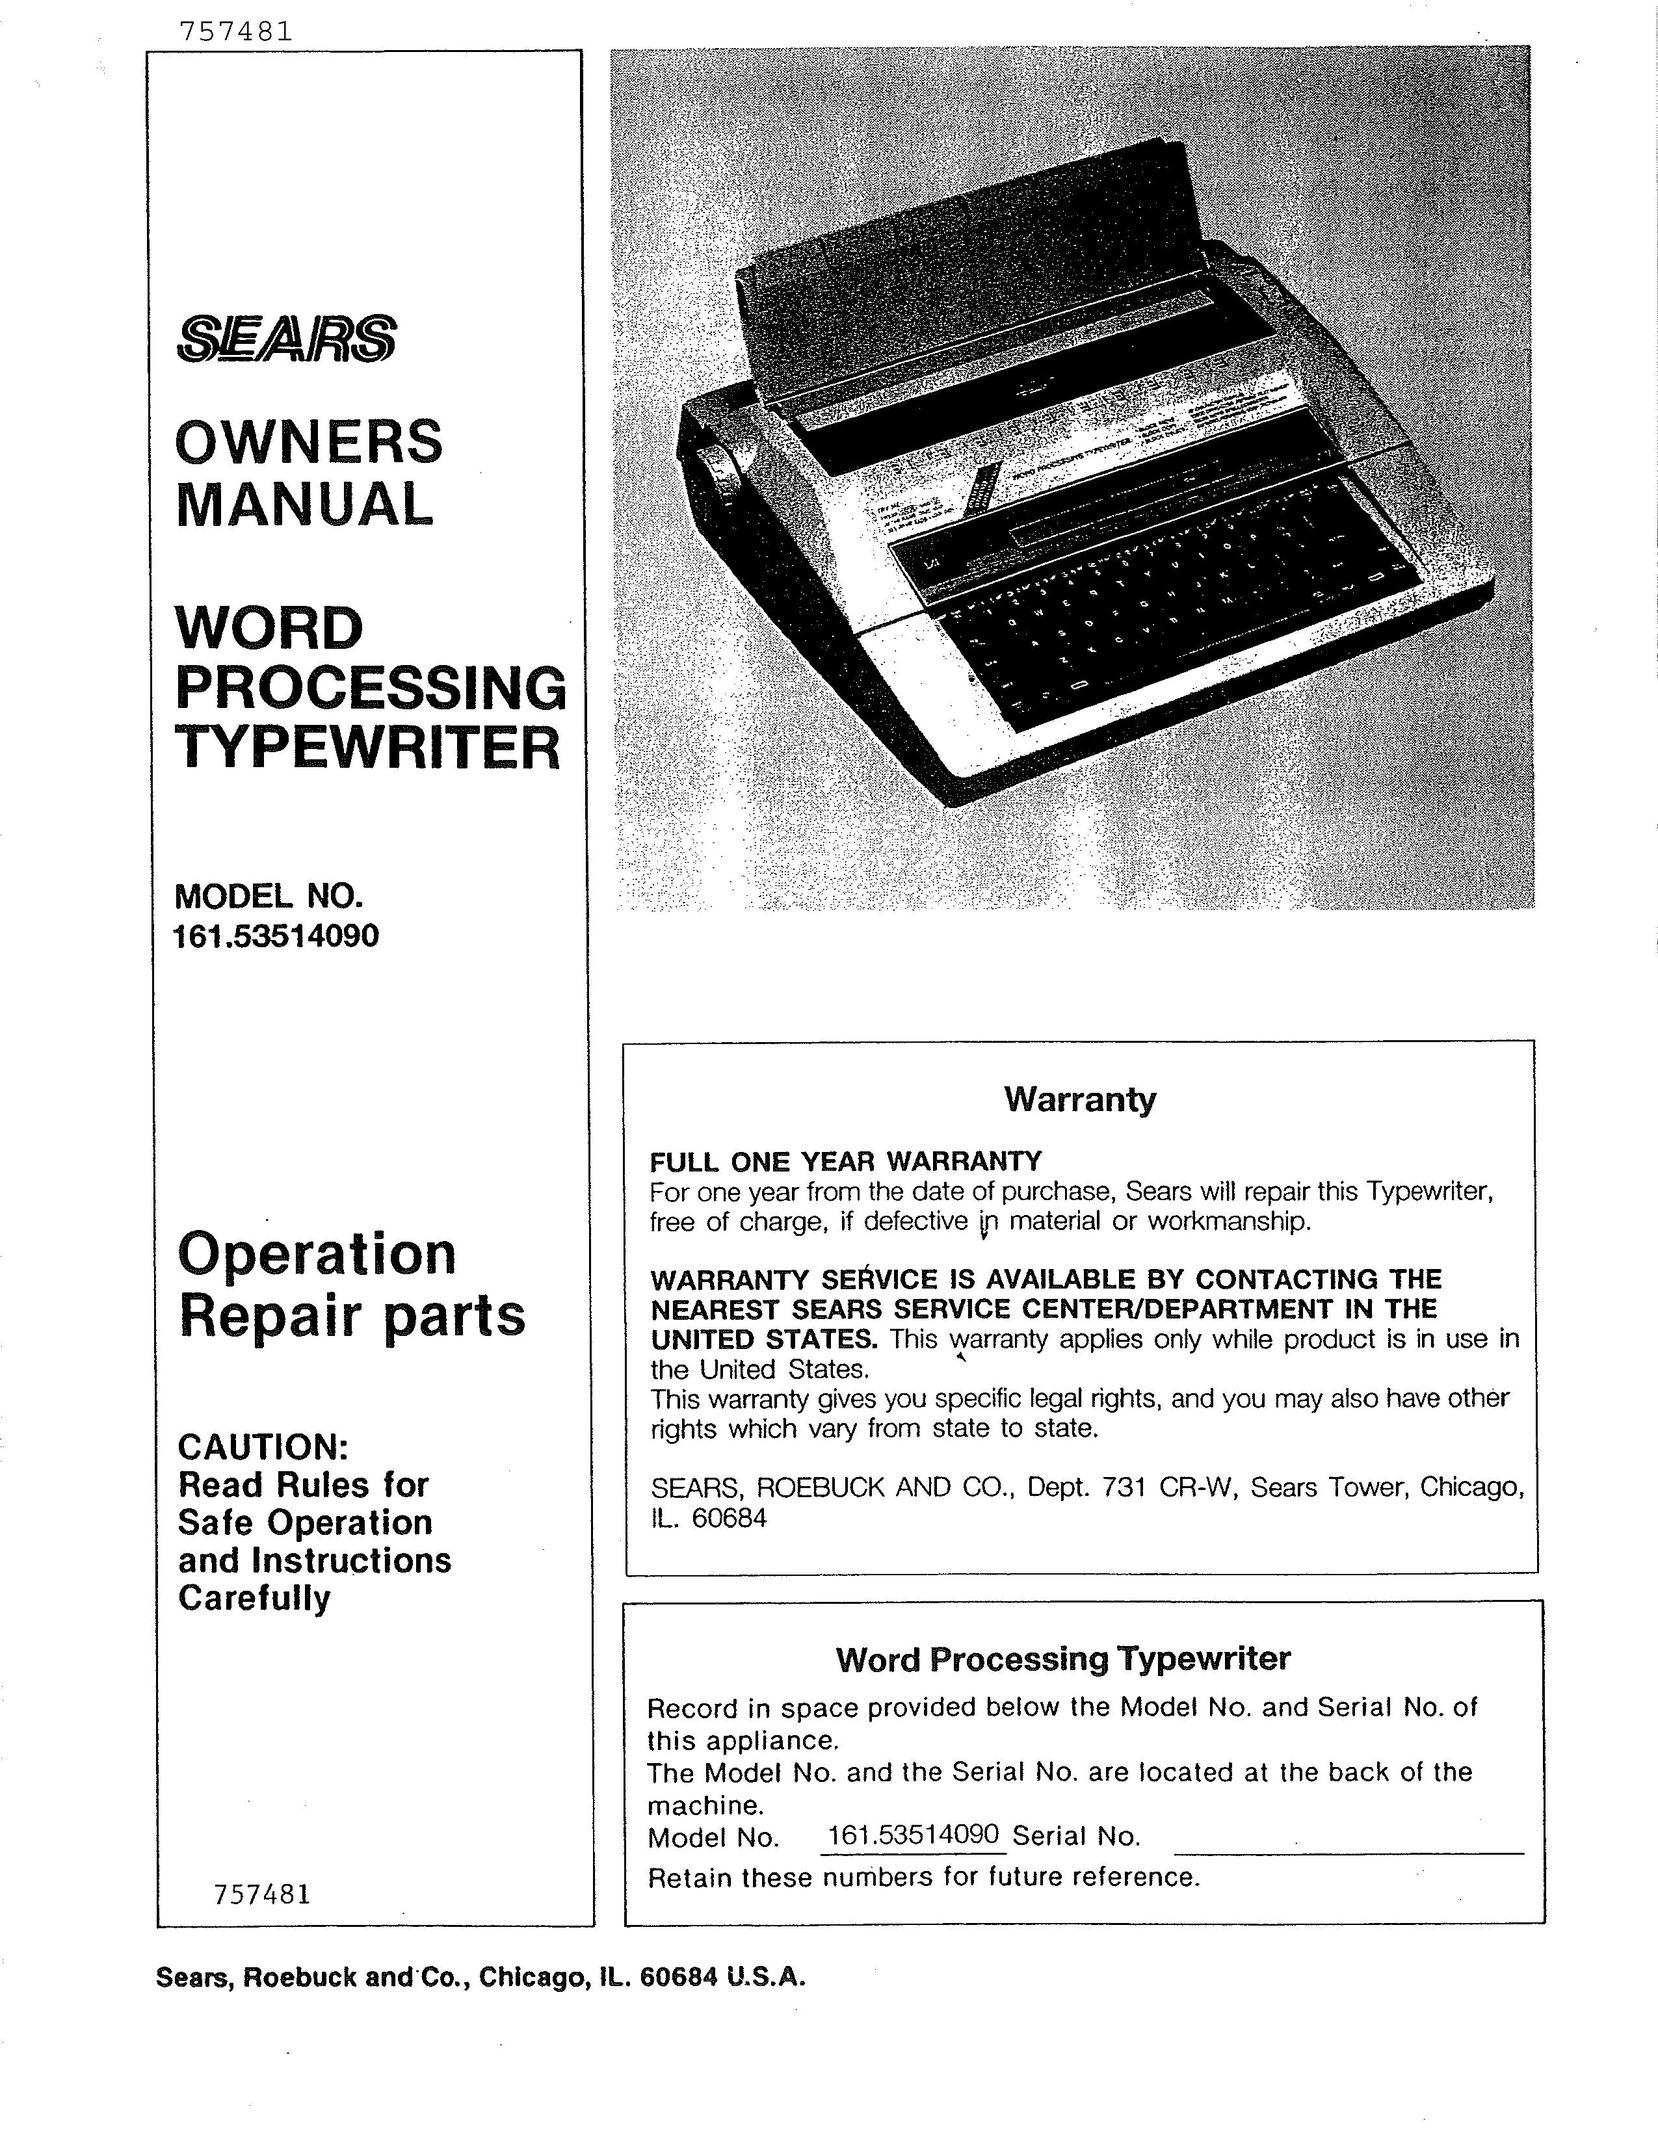 Sears 514 Typewriter User Manual (Page 1)